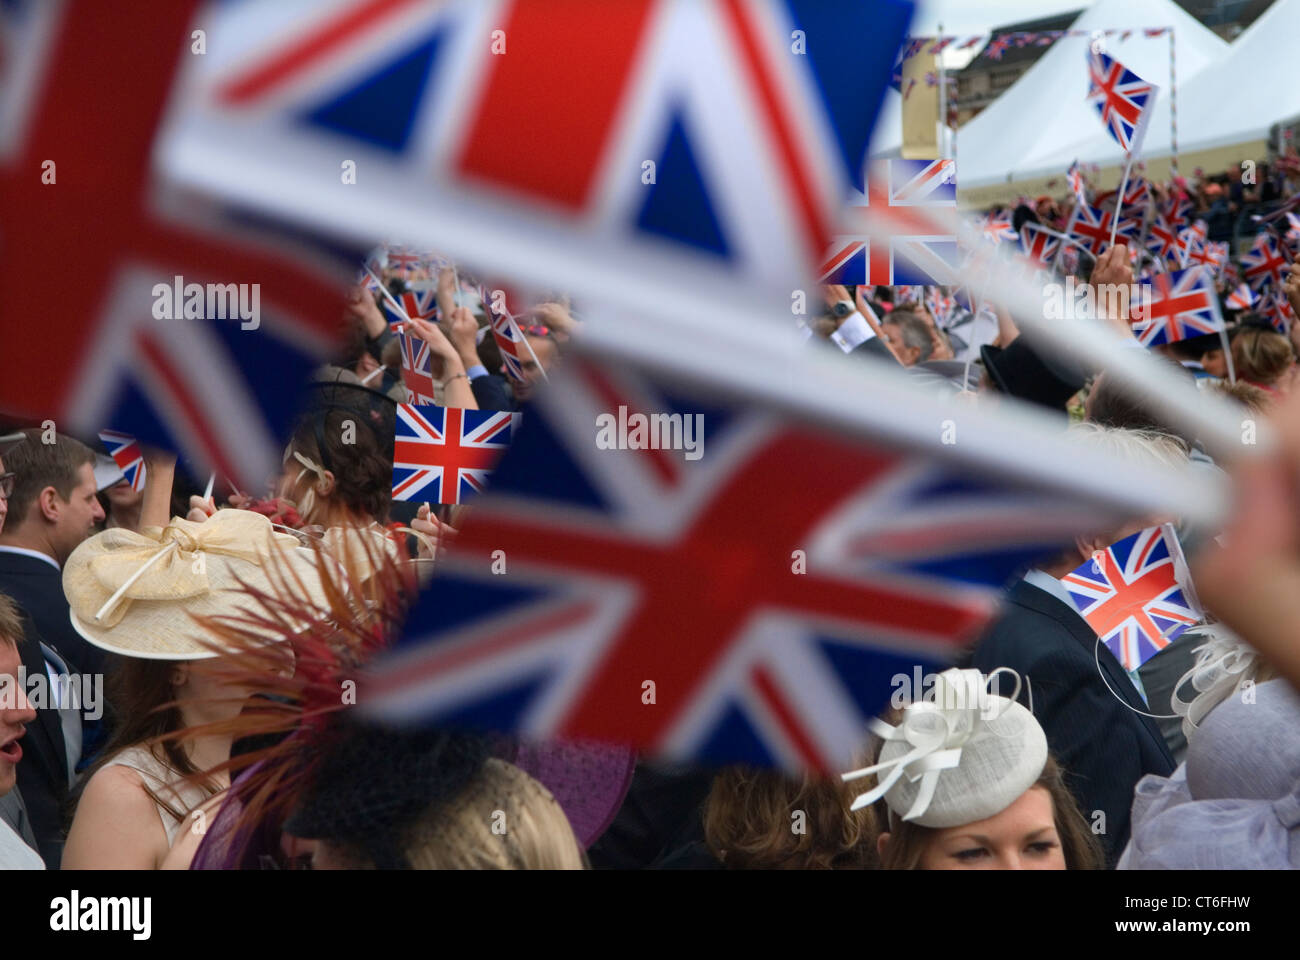 Règle Britannia et Land of Hope and Glory, chansons anglaises patriotiques chantées, brandissant Union Jack Flags à la fin des jours sur le stand du groupe. Royal Ascot 2016 2010 Royaume-Uni HOMER SYKES Banque D'Images